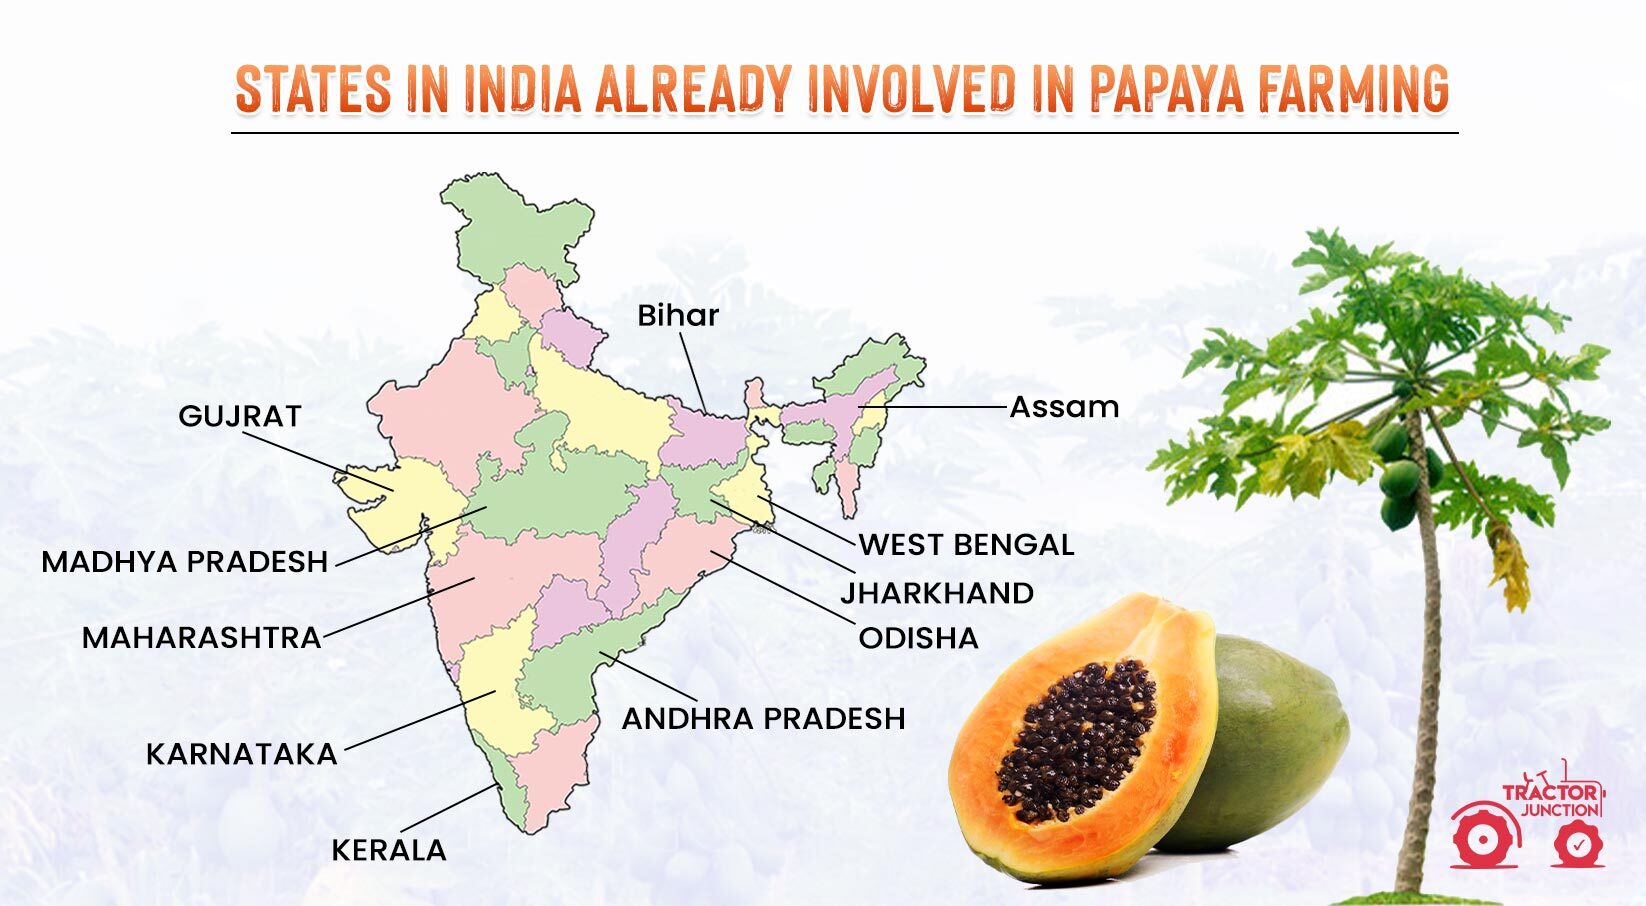 States in India already involved in papaya farming